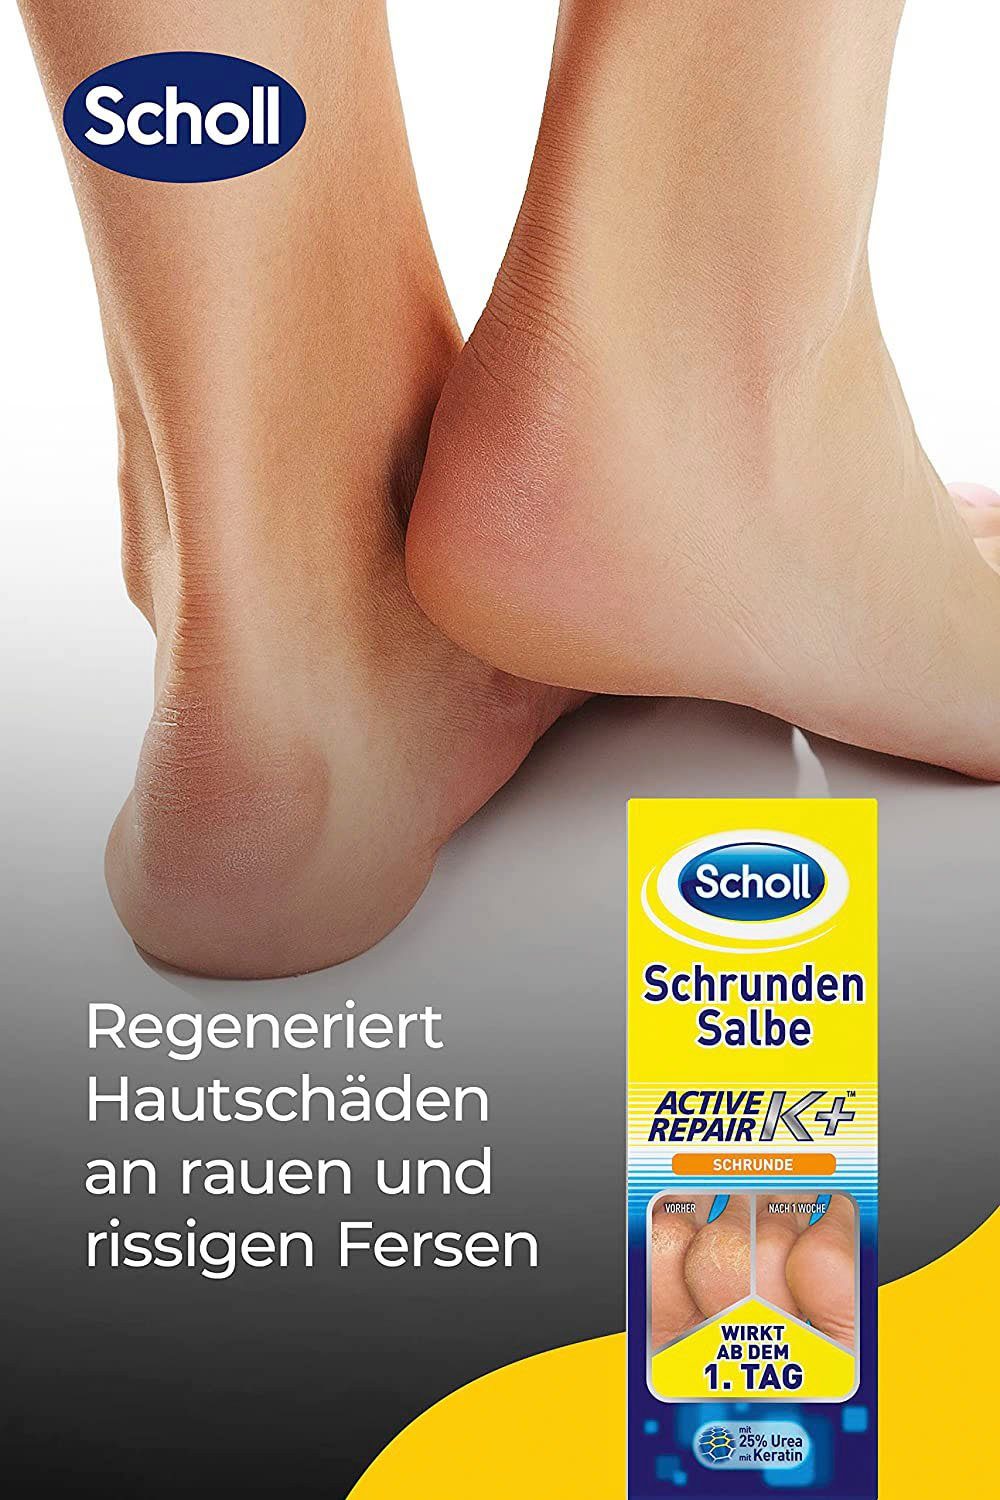 Repair Fußcreme Salbe Scholl K+, Active Schrunden